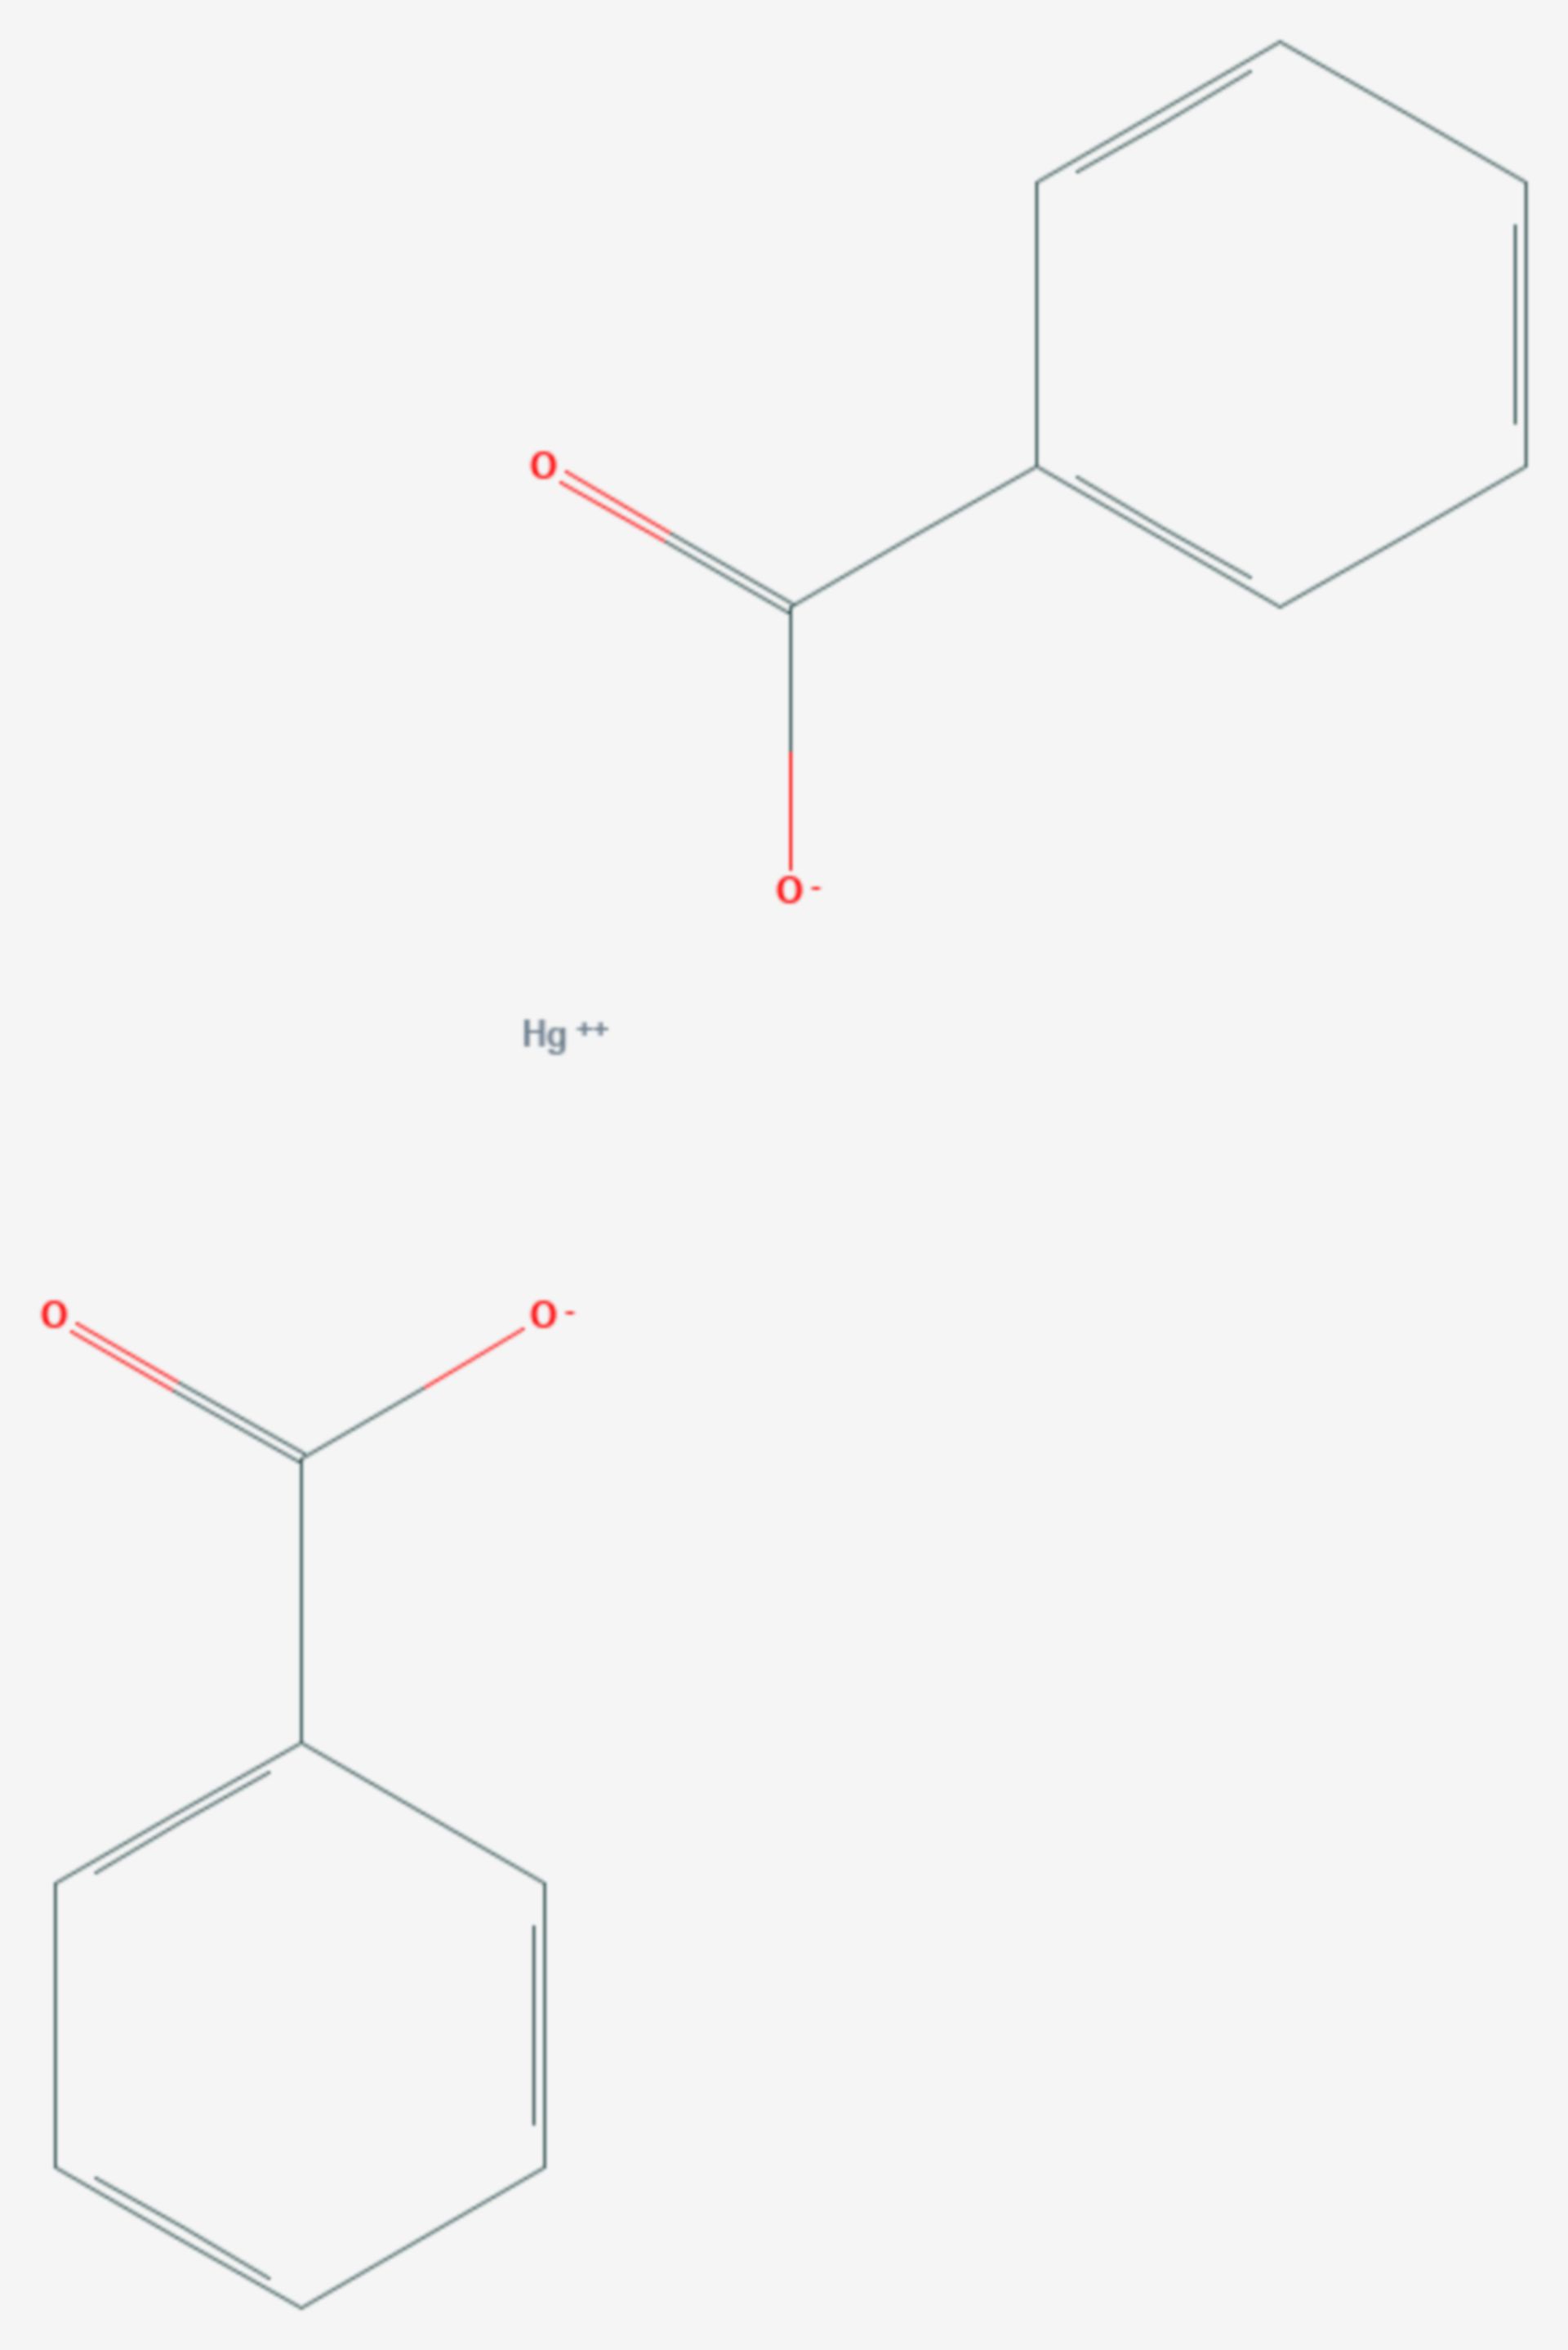 Quecksilber(II)-benzoat (Strukturformel)